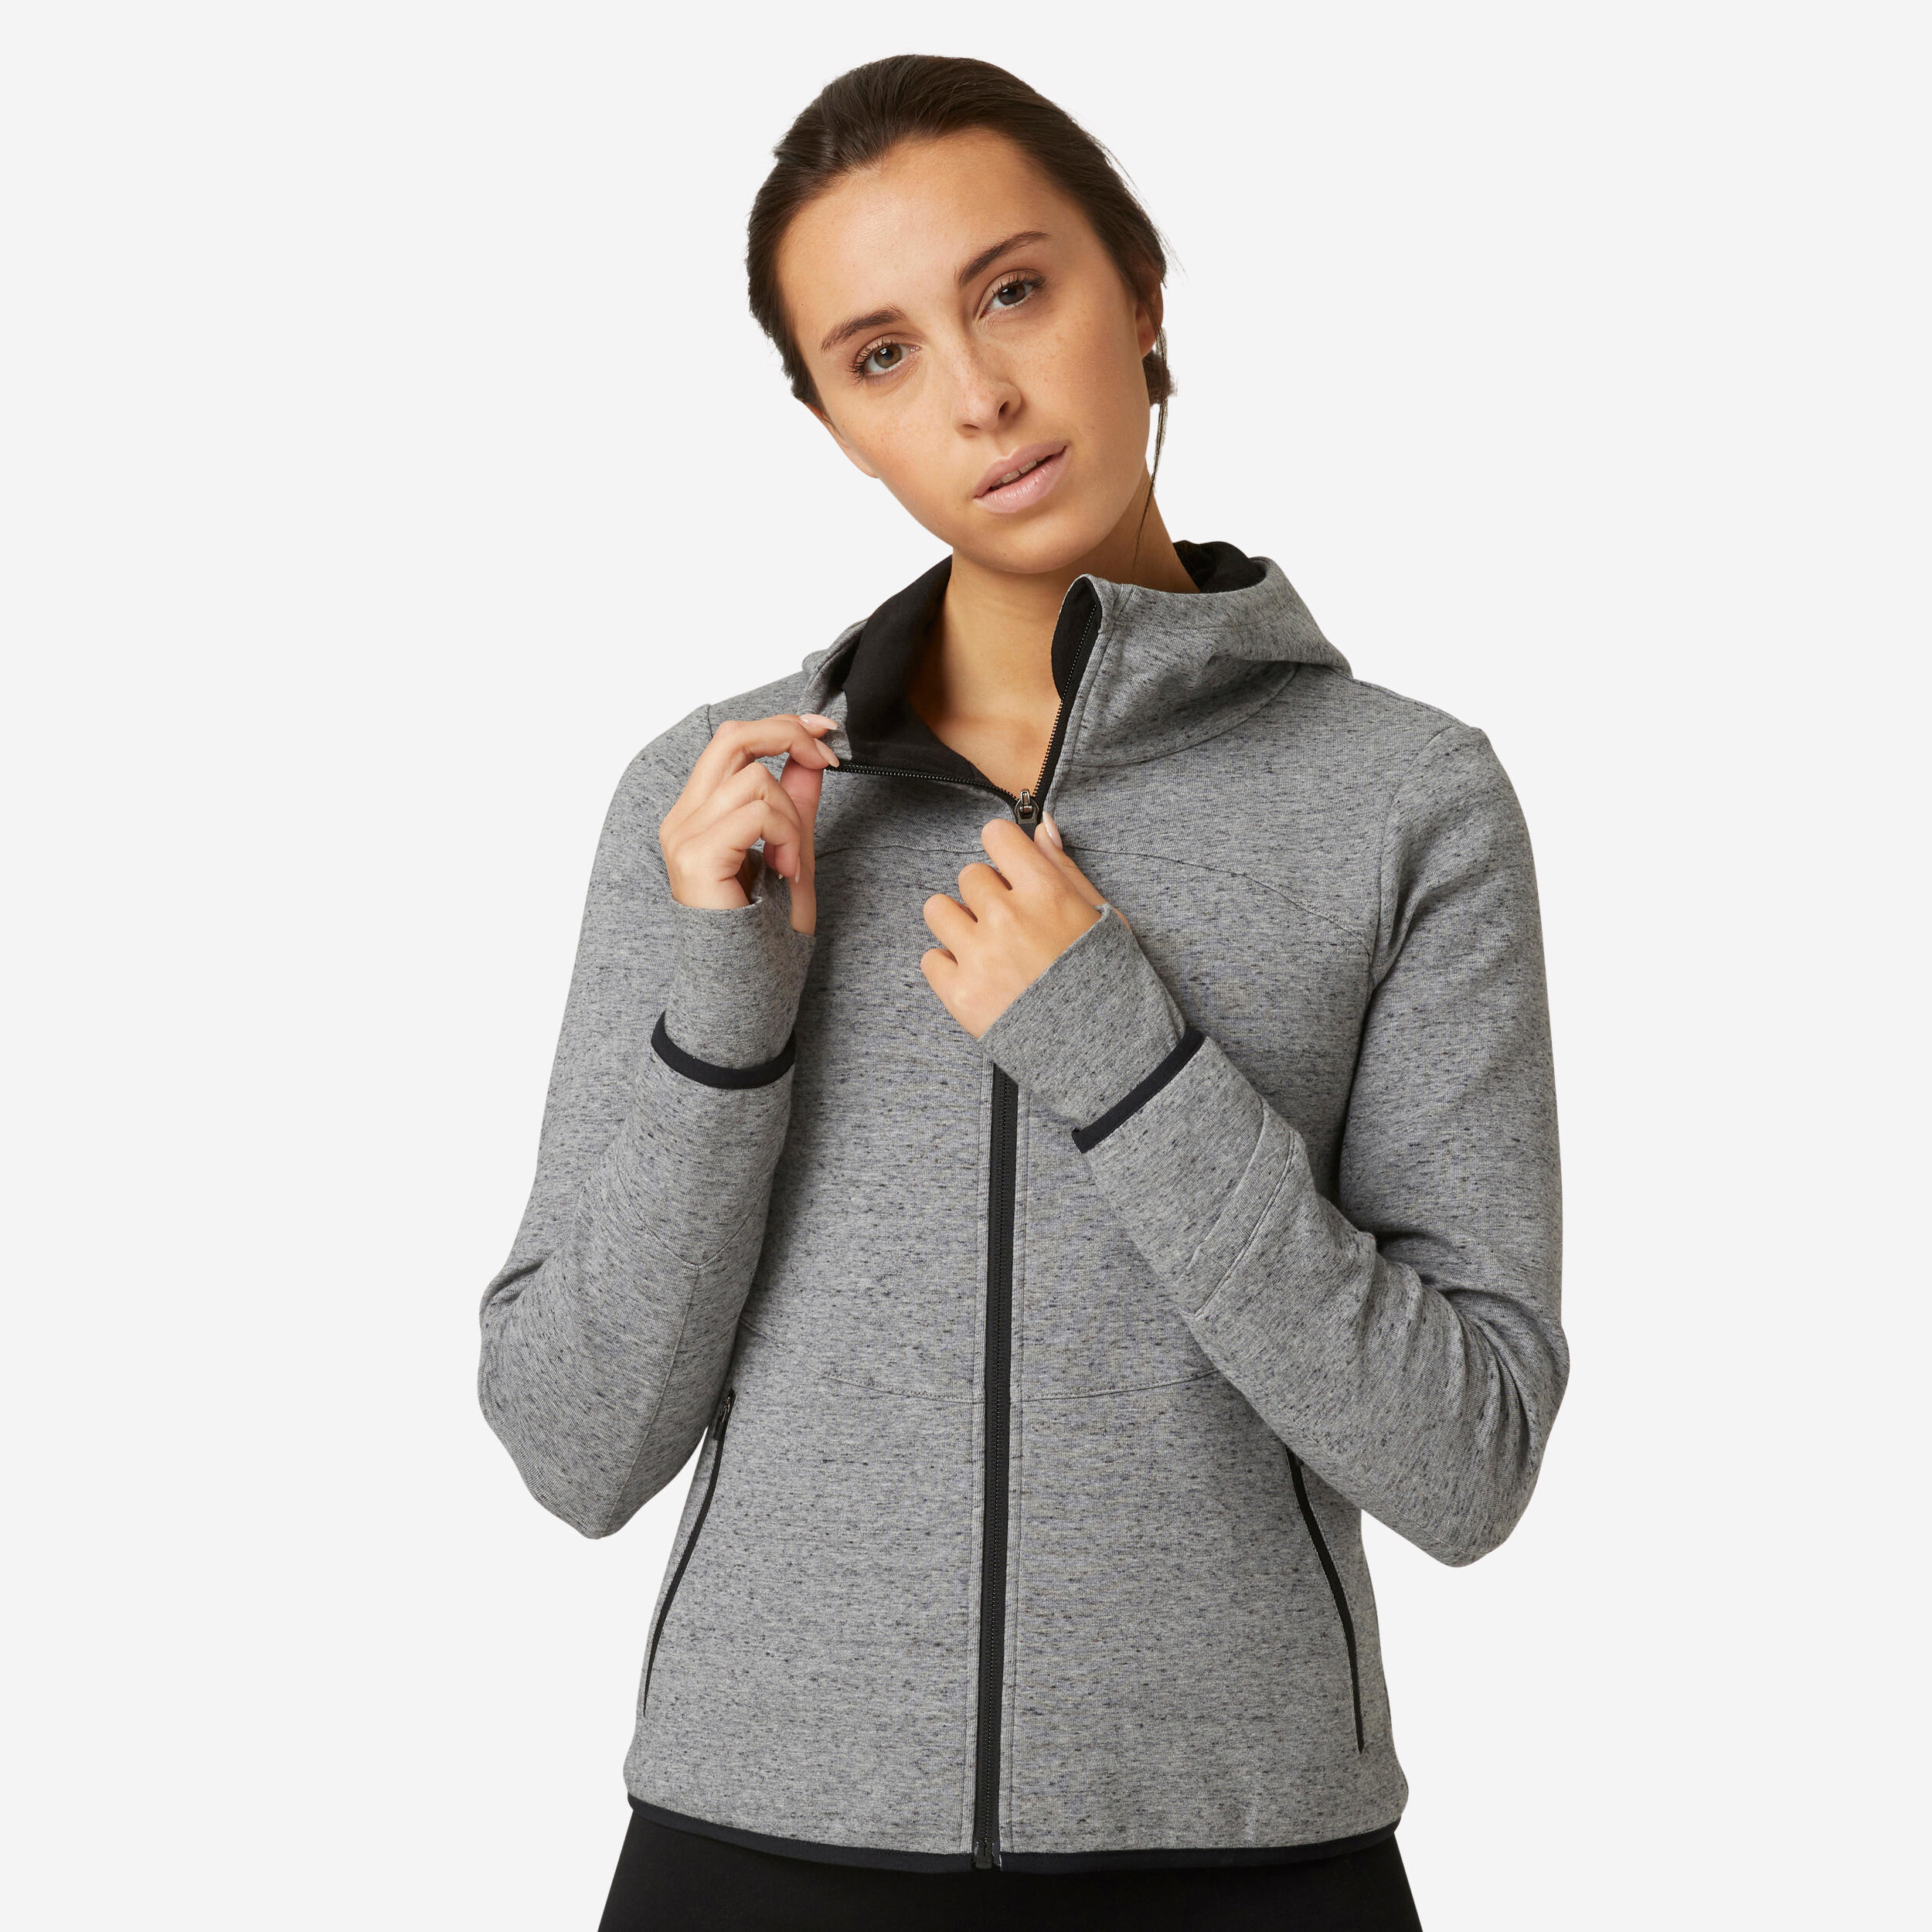 DOMYOS Women's Zip-Up Fitness Hoodie 500 Spacer - Grey